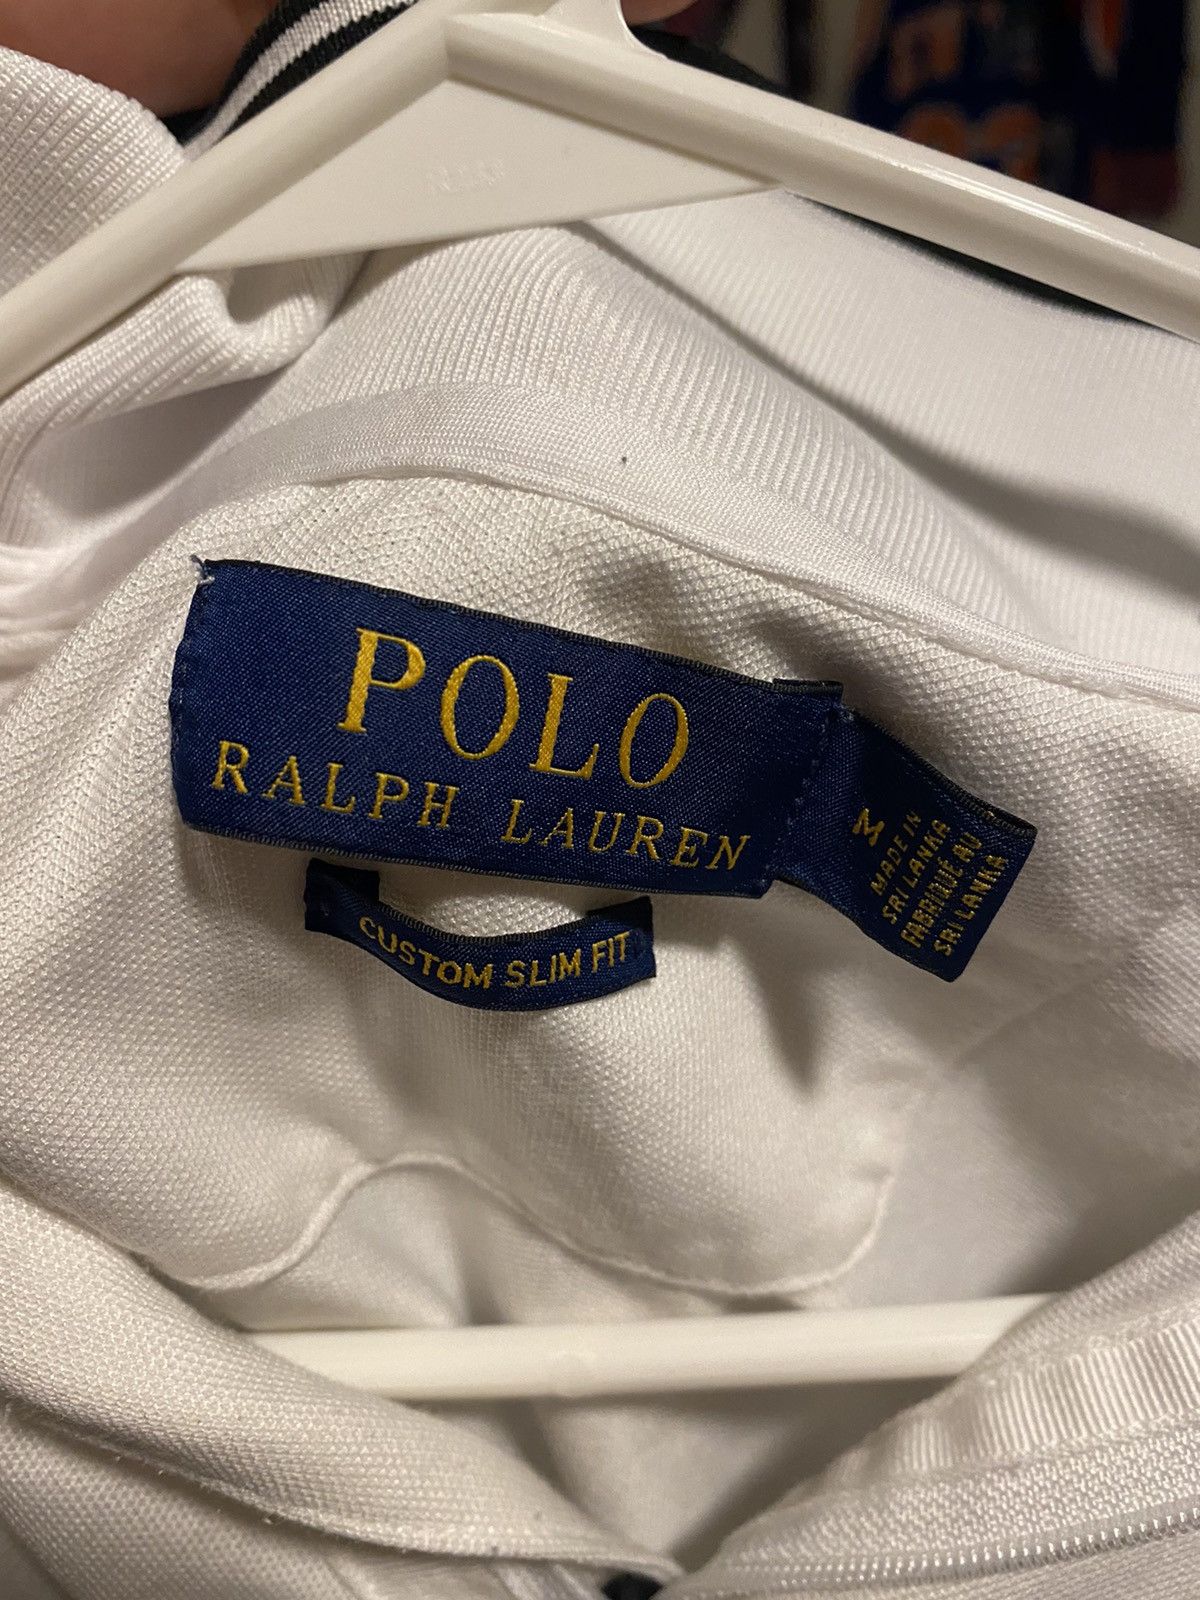 Polo Ralph Lauren Polo Ralph Lauren Polo Shirt | Grailed